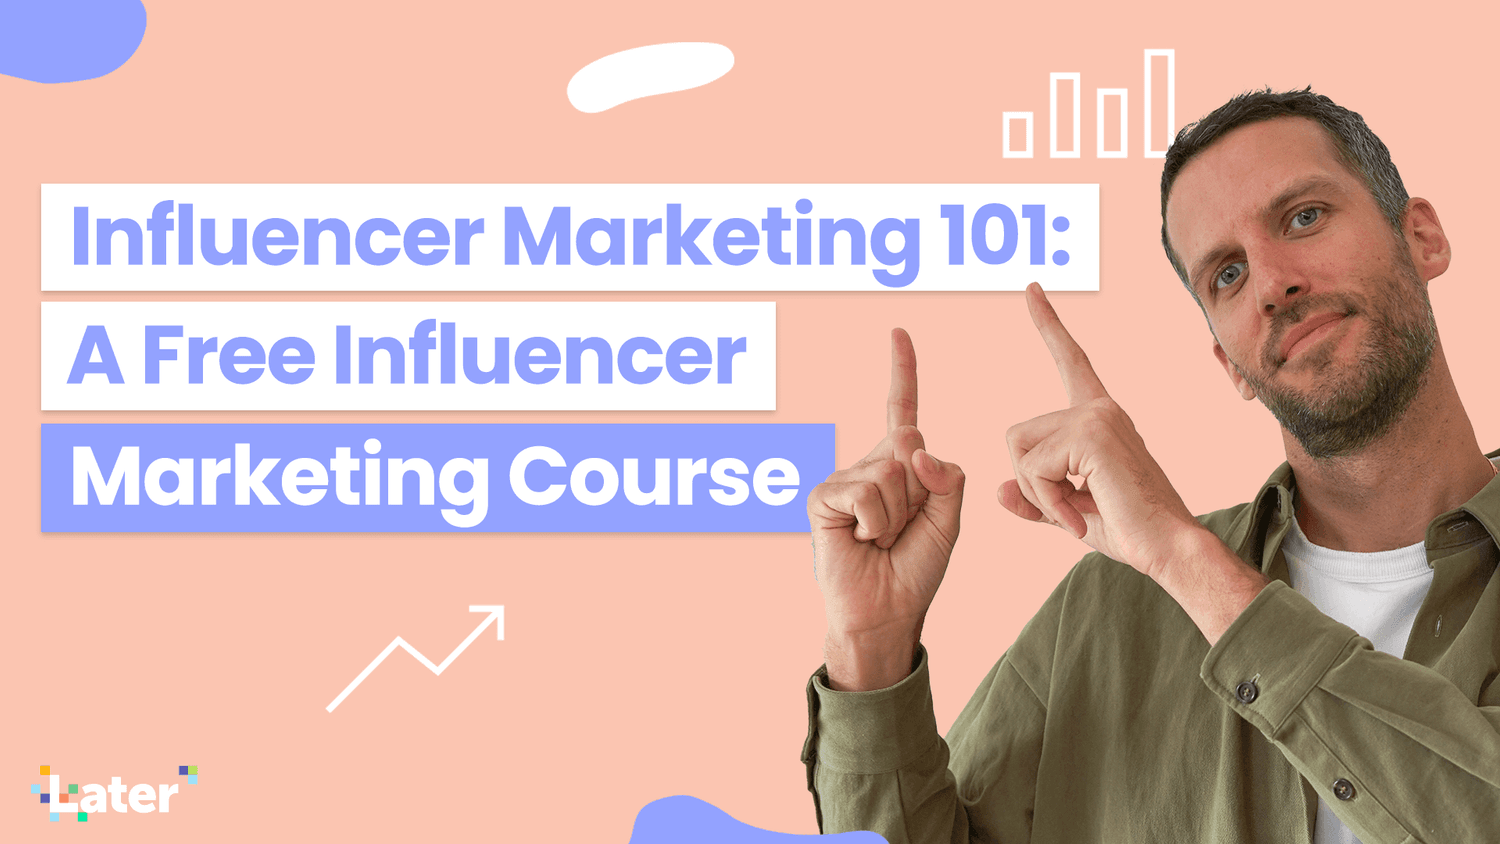 Influencer Marketing 101: Free Influencer Marketing Course